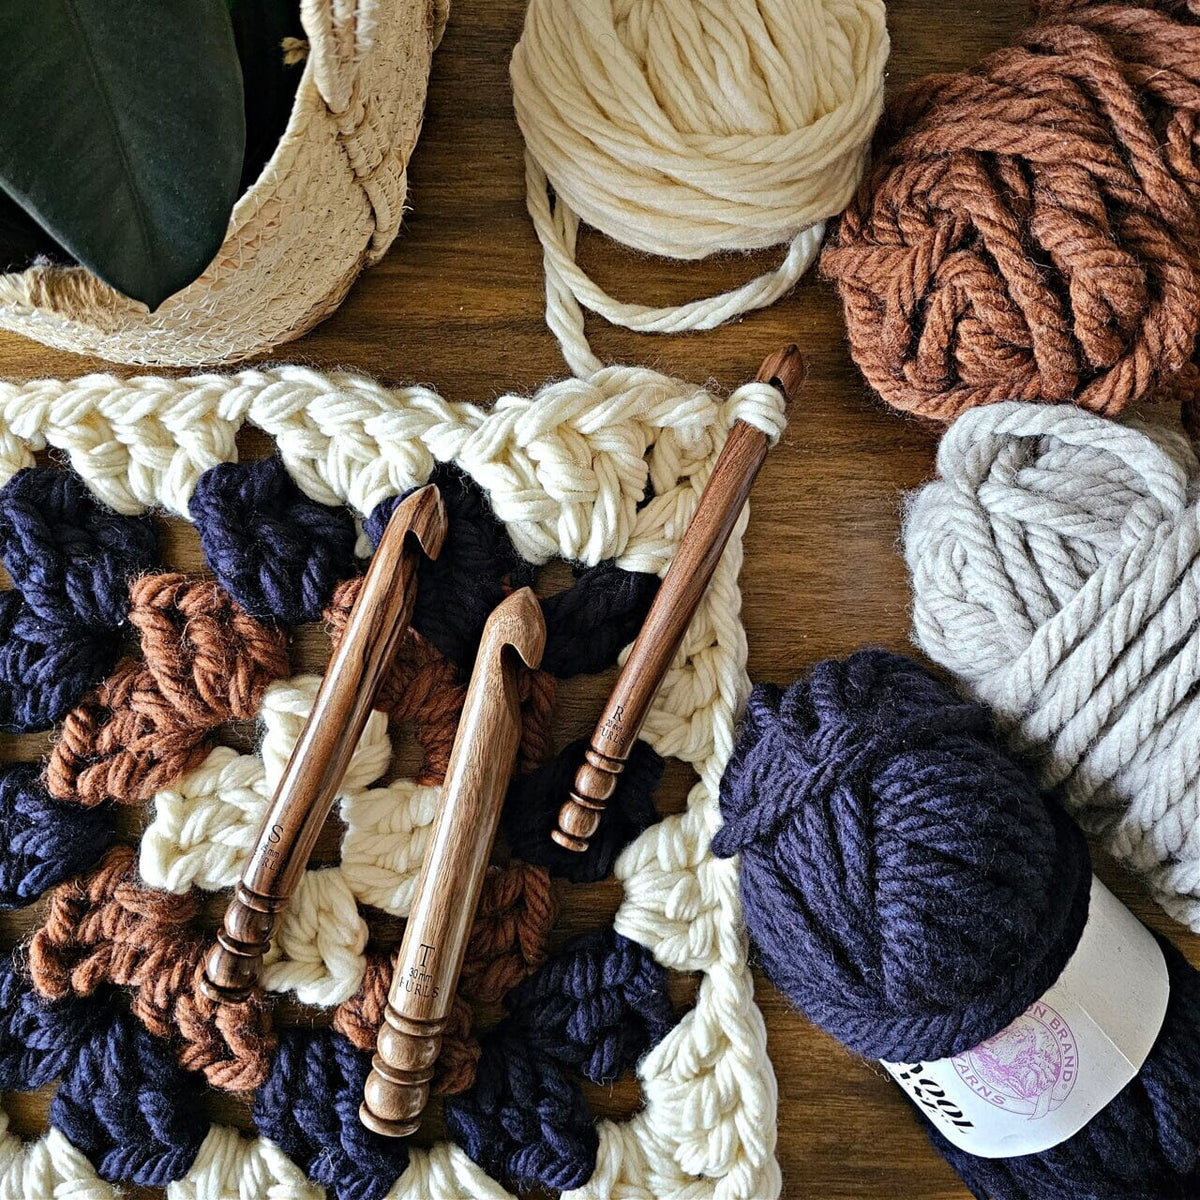 Alpha Series Bloodwood Handmade Wood Crochet Hook